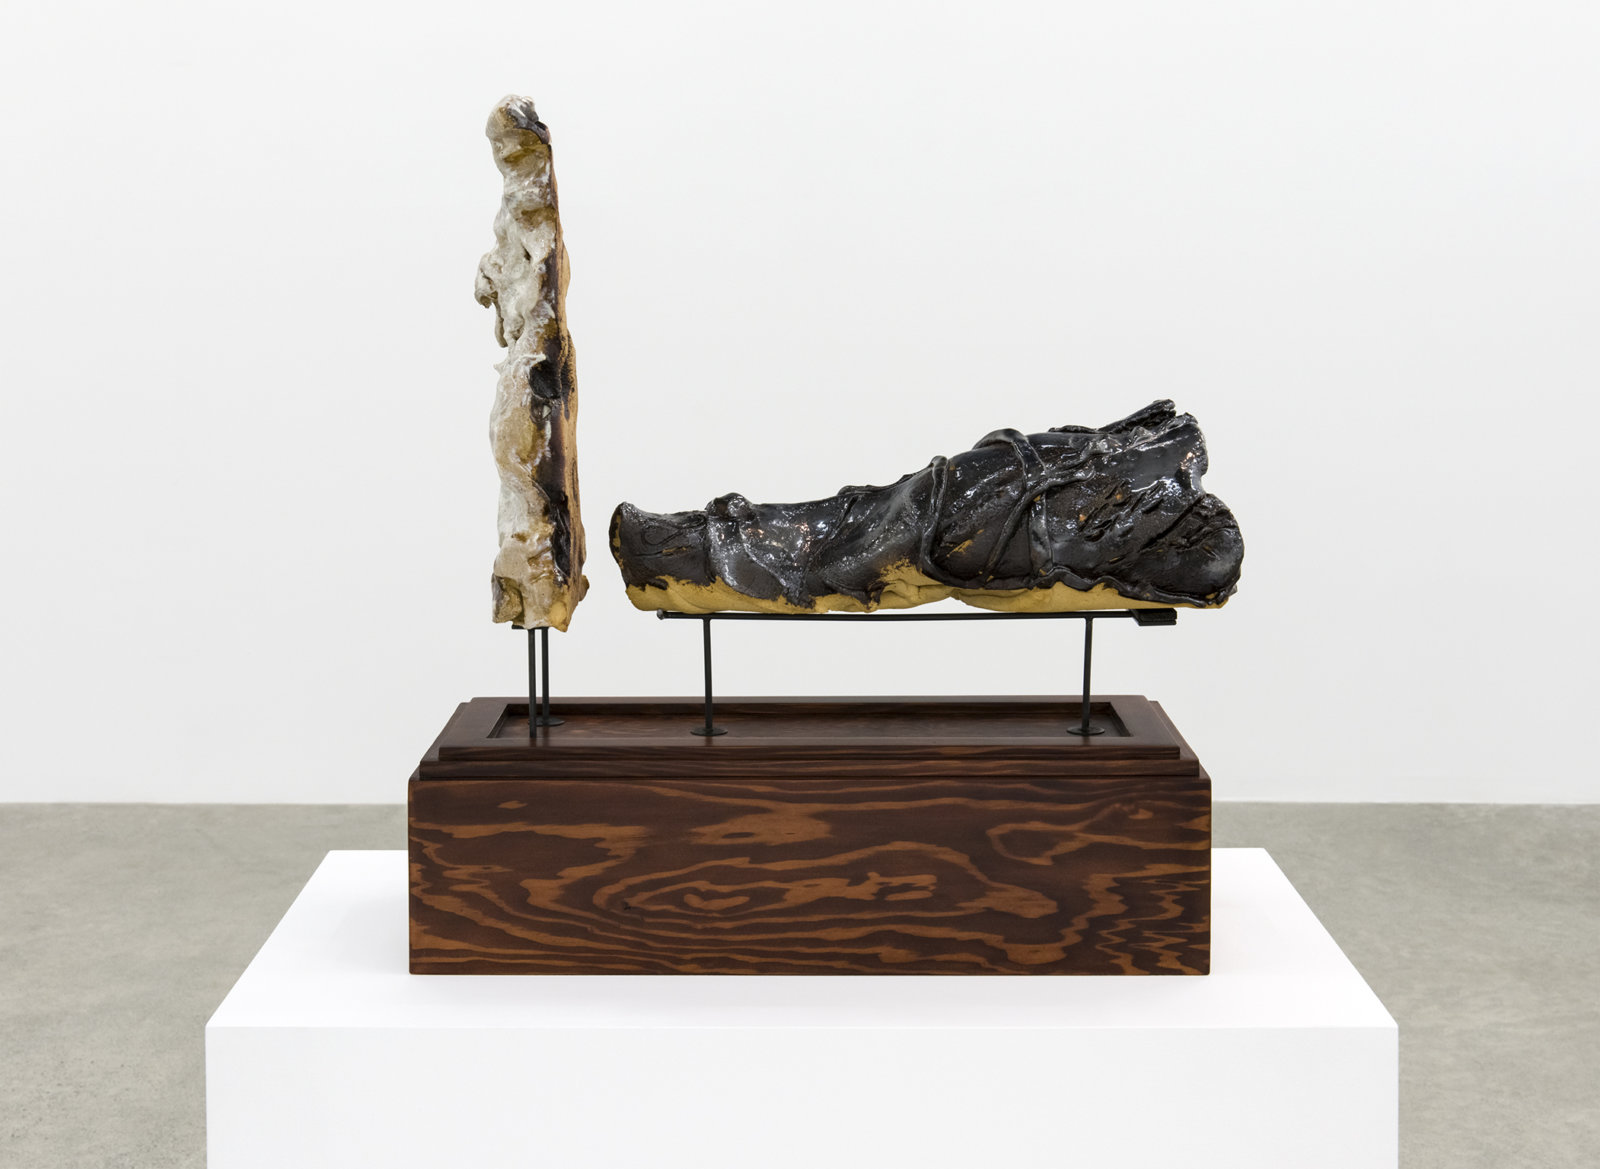 Damian Moppett, Figure with Shadow, 2016, glazed stoneware, wood, steel, 23 x 11 x 21 in. (57 x 27 x 53 cm)